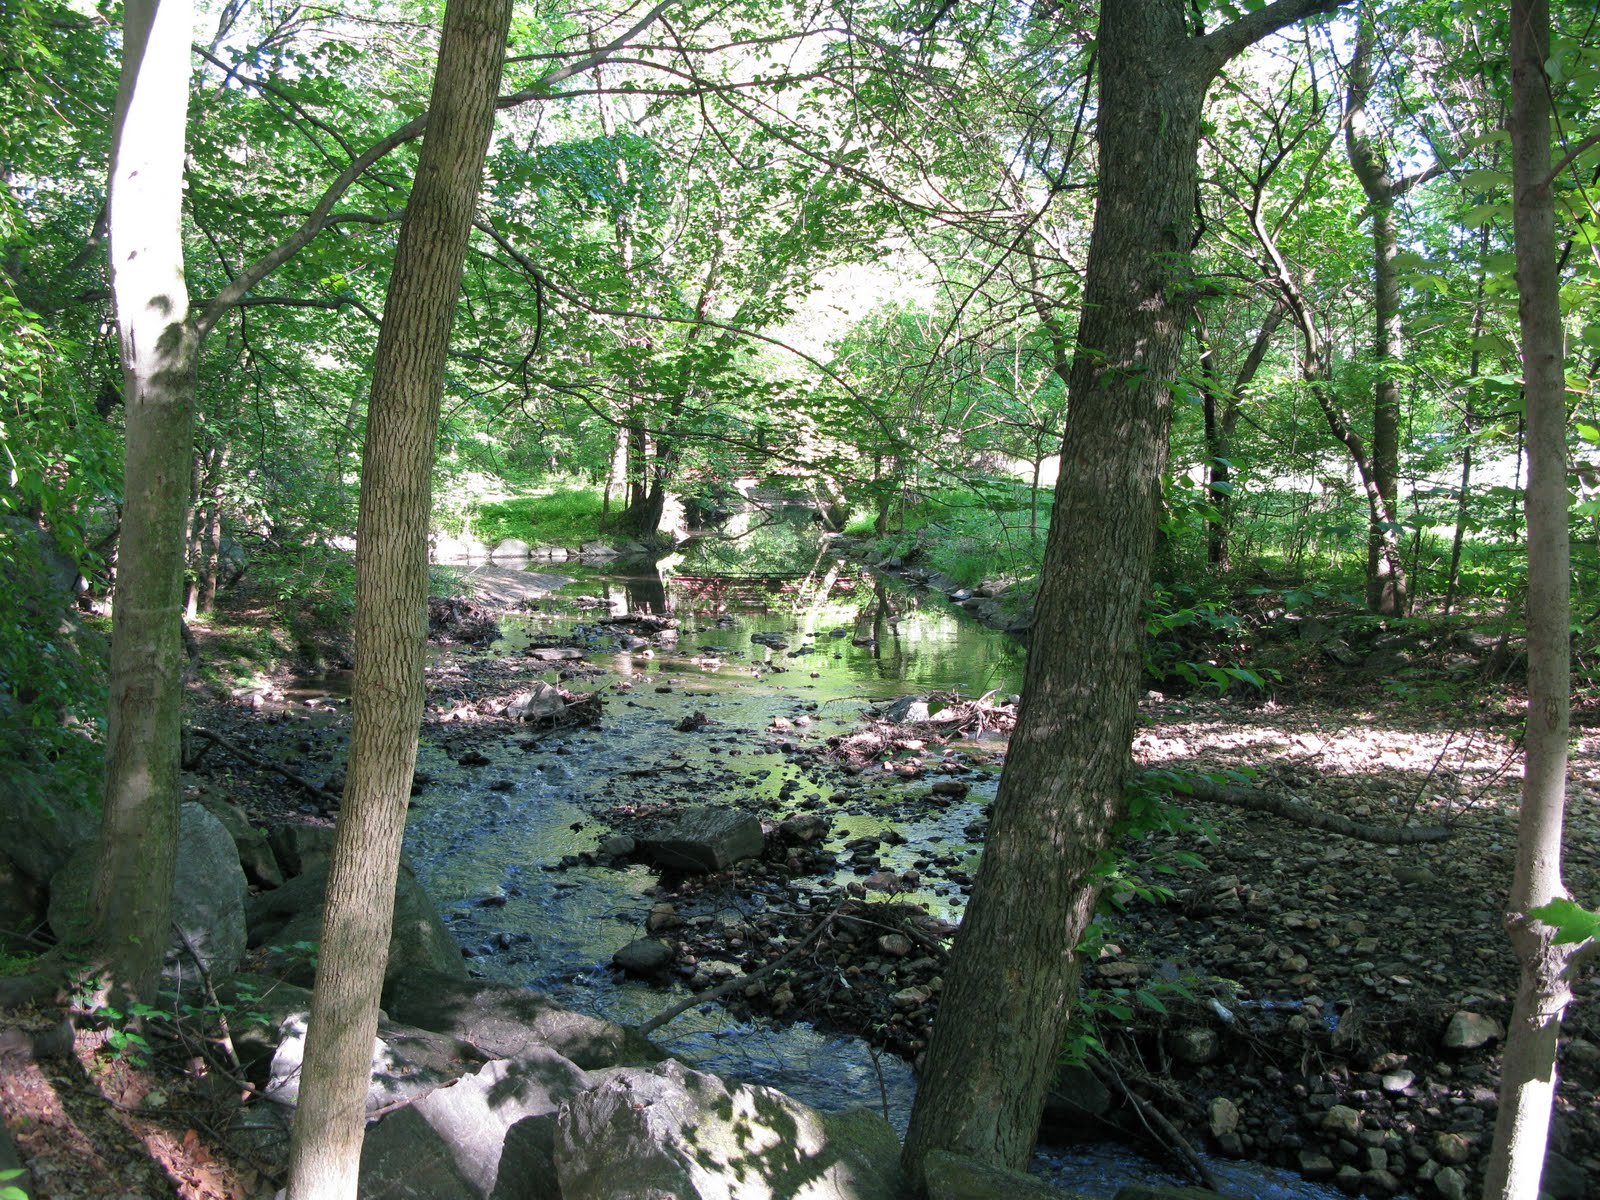 Sligo Creek